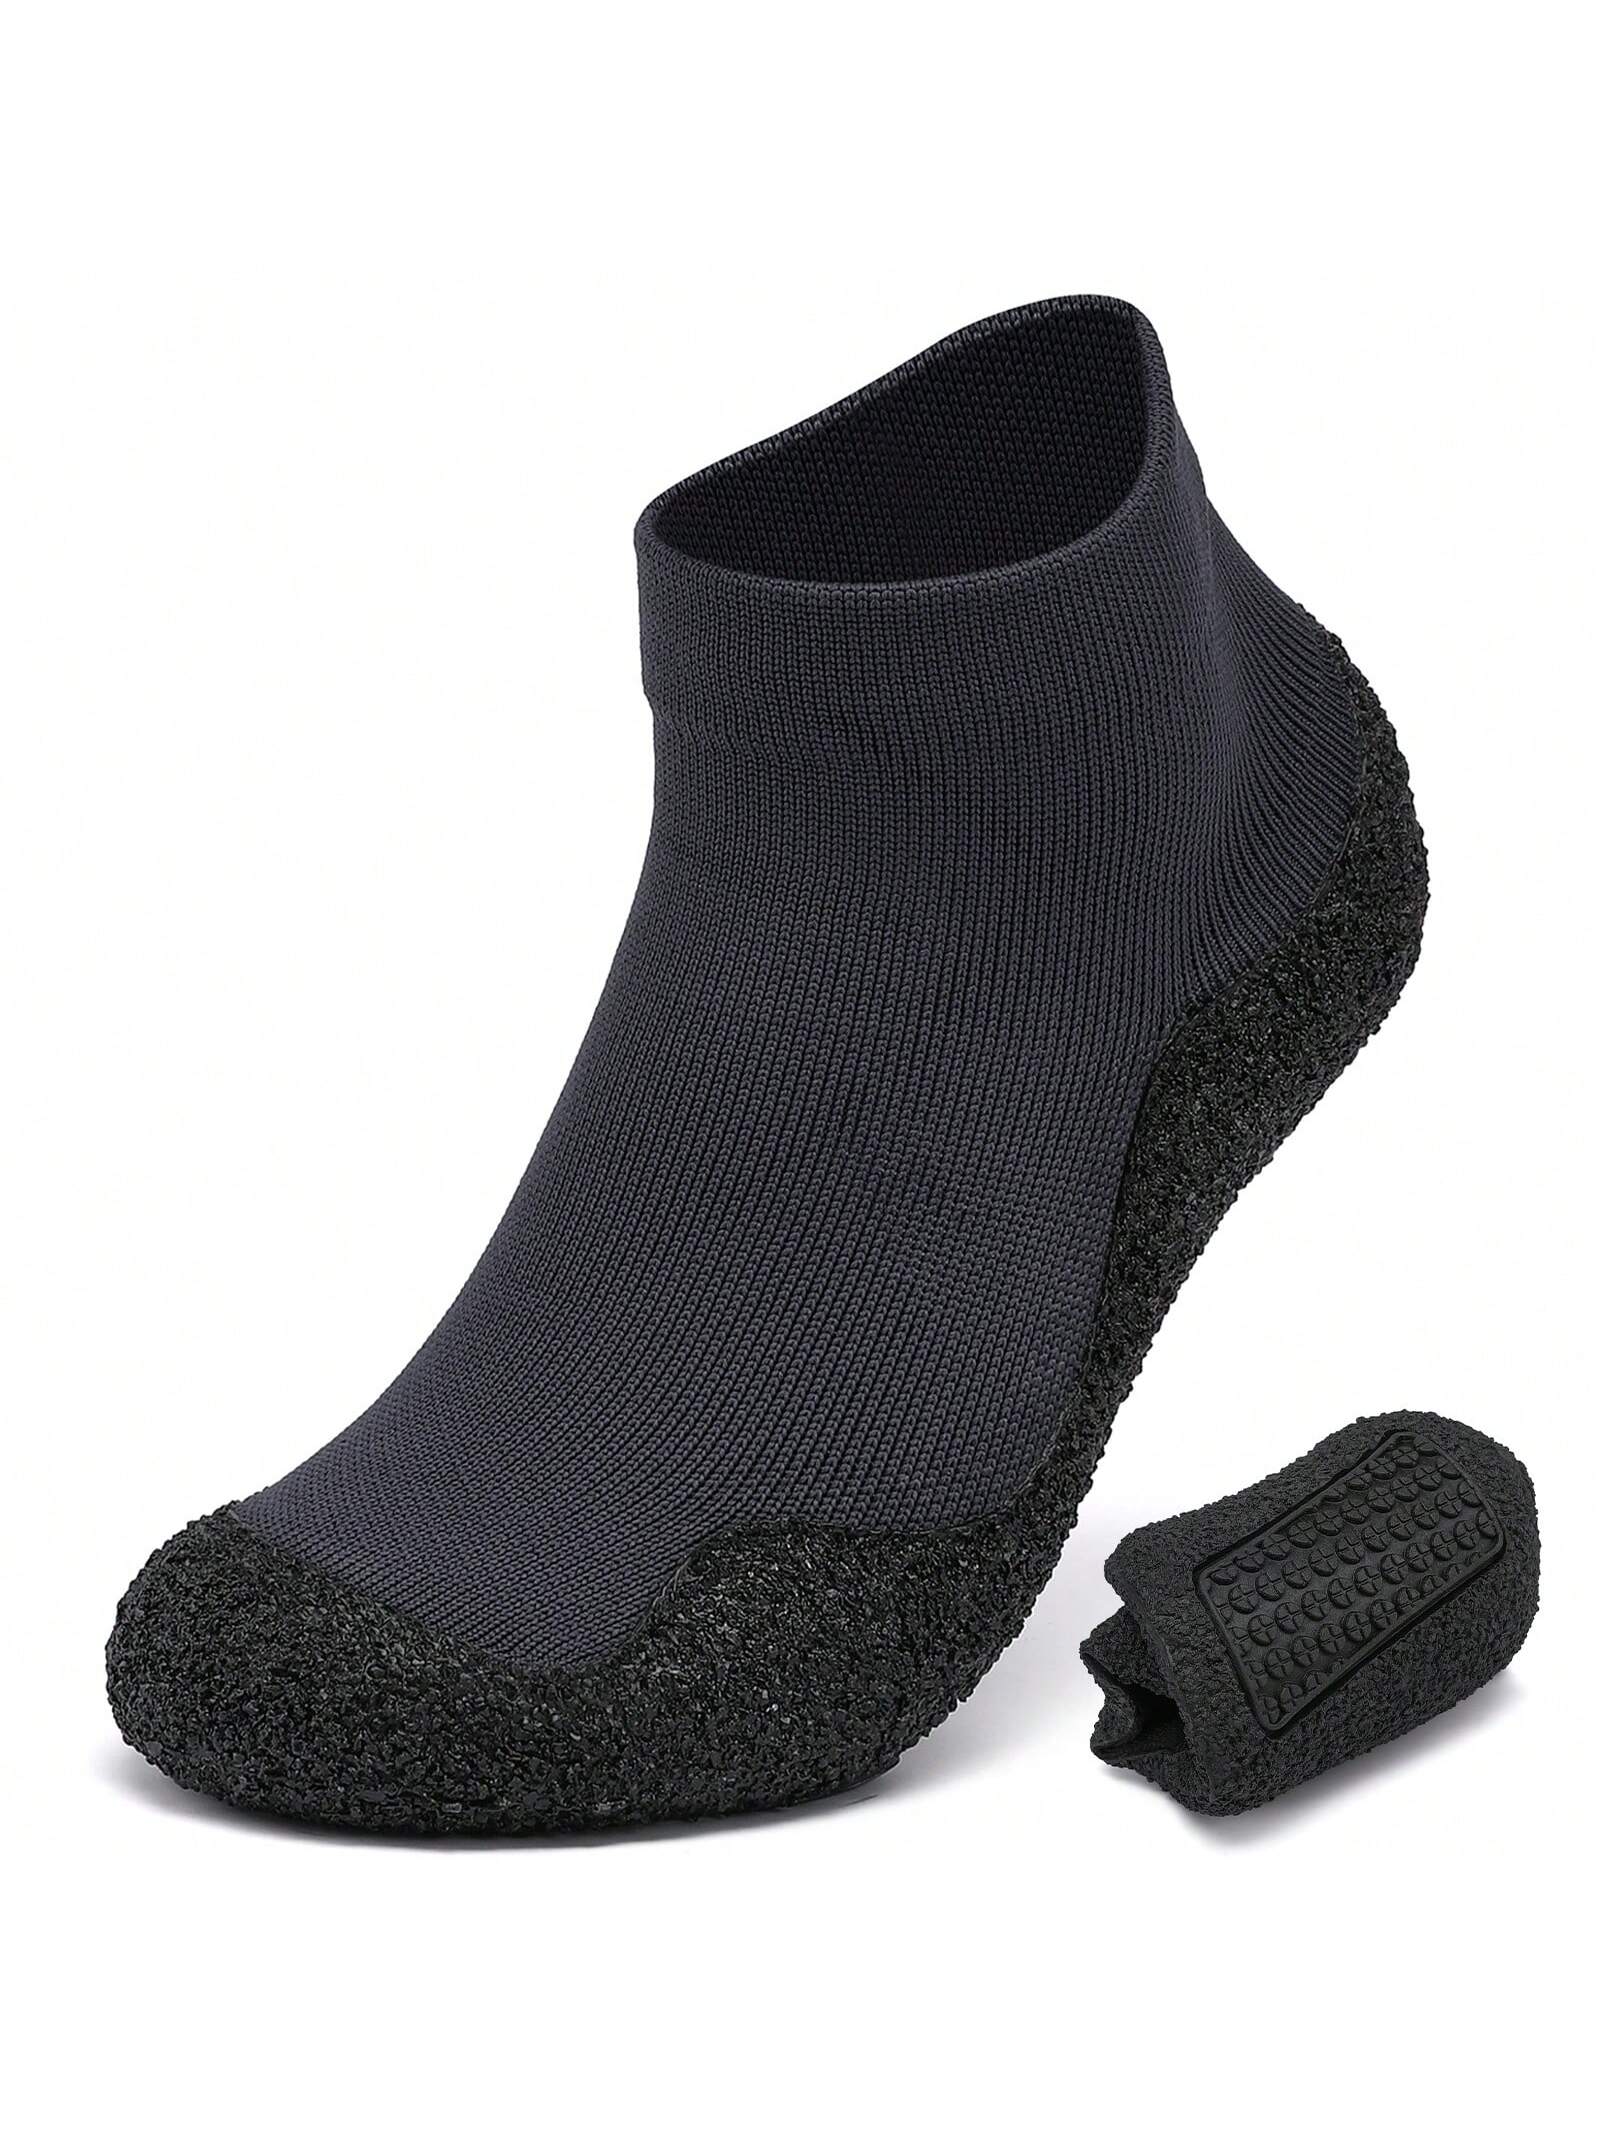 Минималистские туфли-носки для мужчин и женщин | Легкая обувь для ходьбы с нулевым падением | Многоцелевой, серый